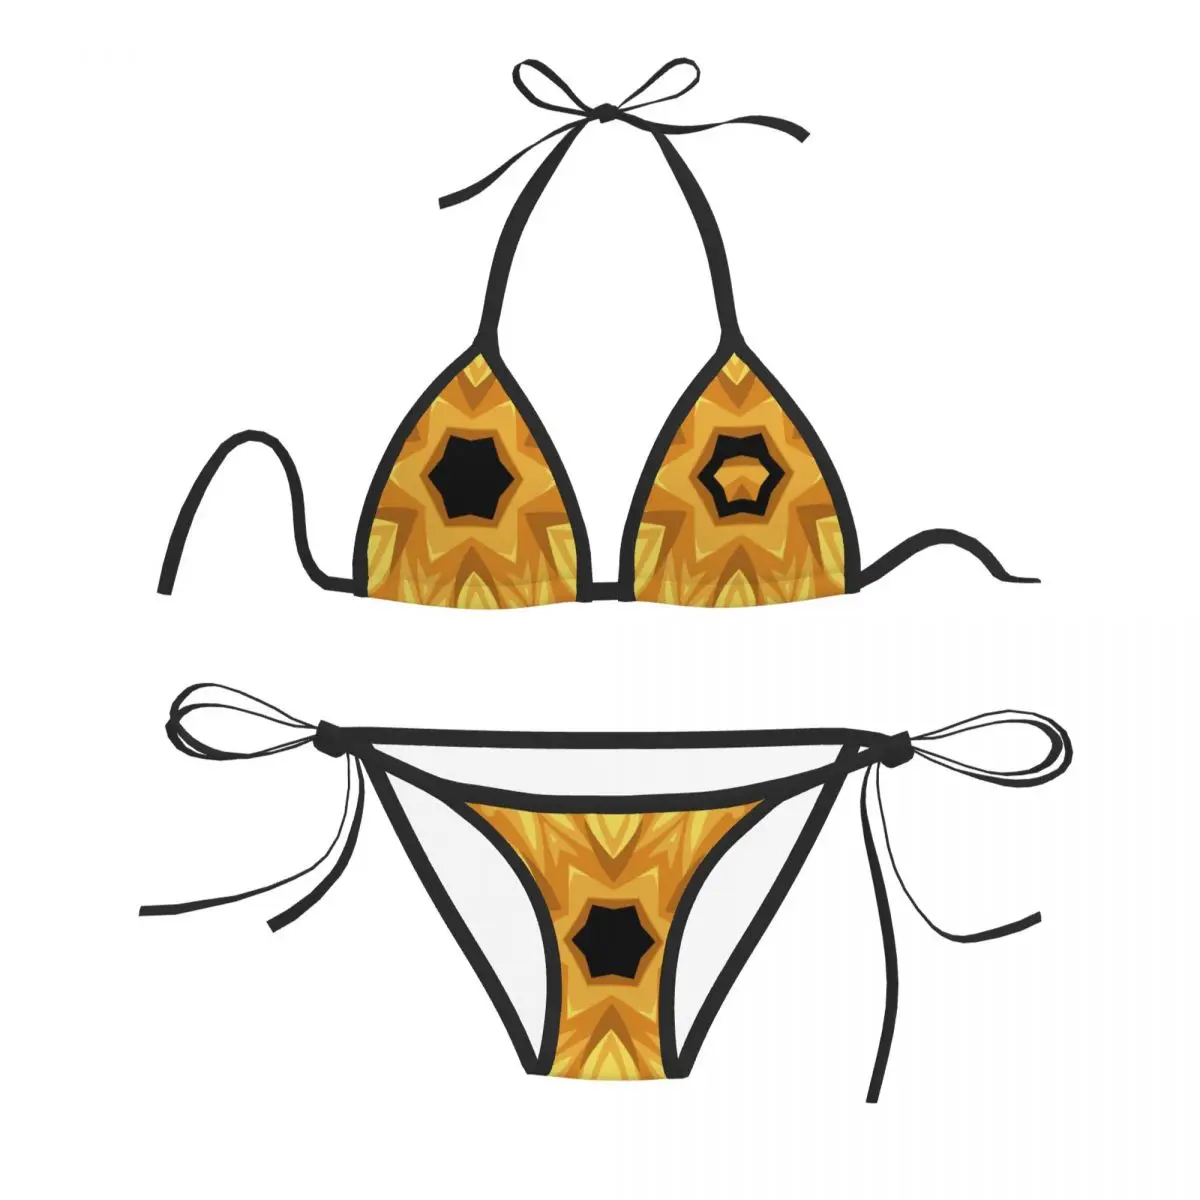 

Женский сексуальный комплект бикини с бюстгальтером пуш-ап, Холтер, стринги, бразильский купальник, одежда для купания, пляжная одежда, купальный костюм 45545-1